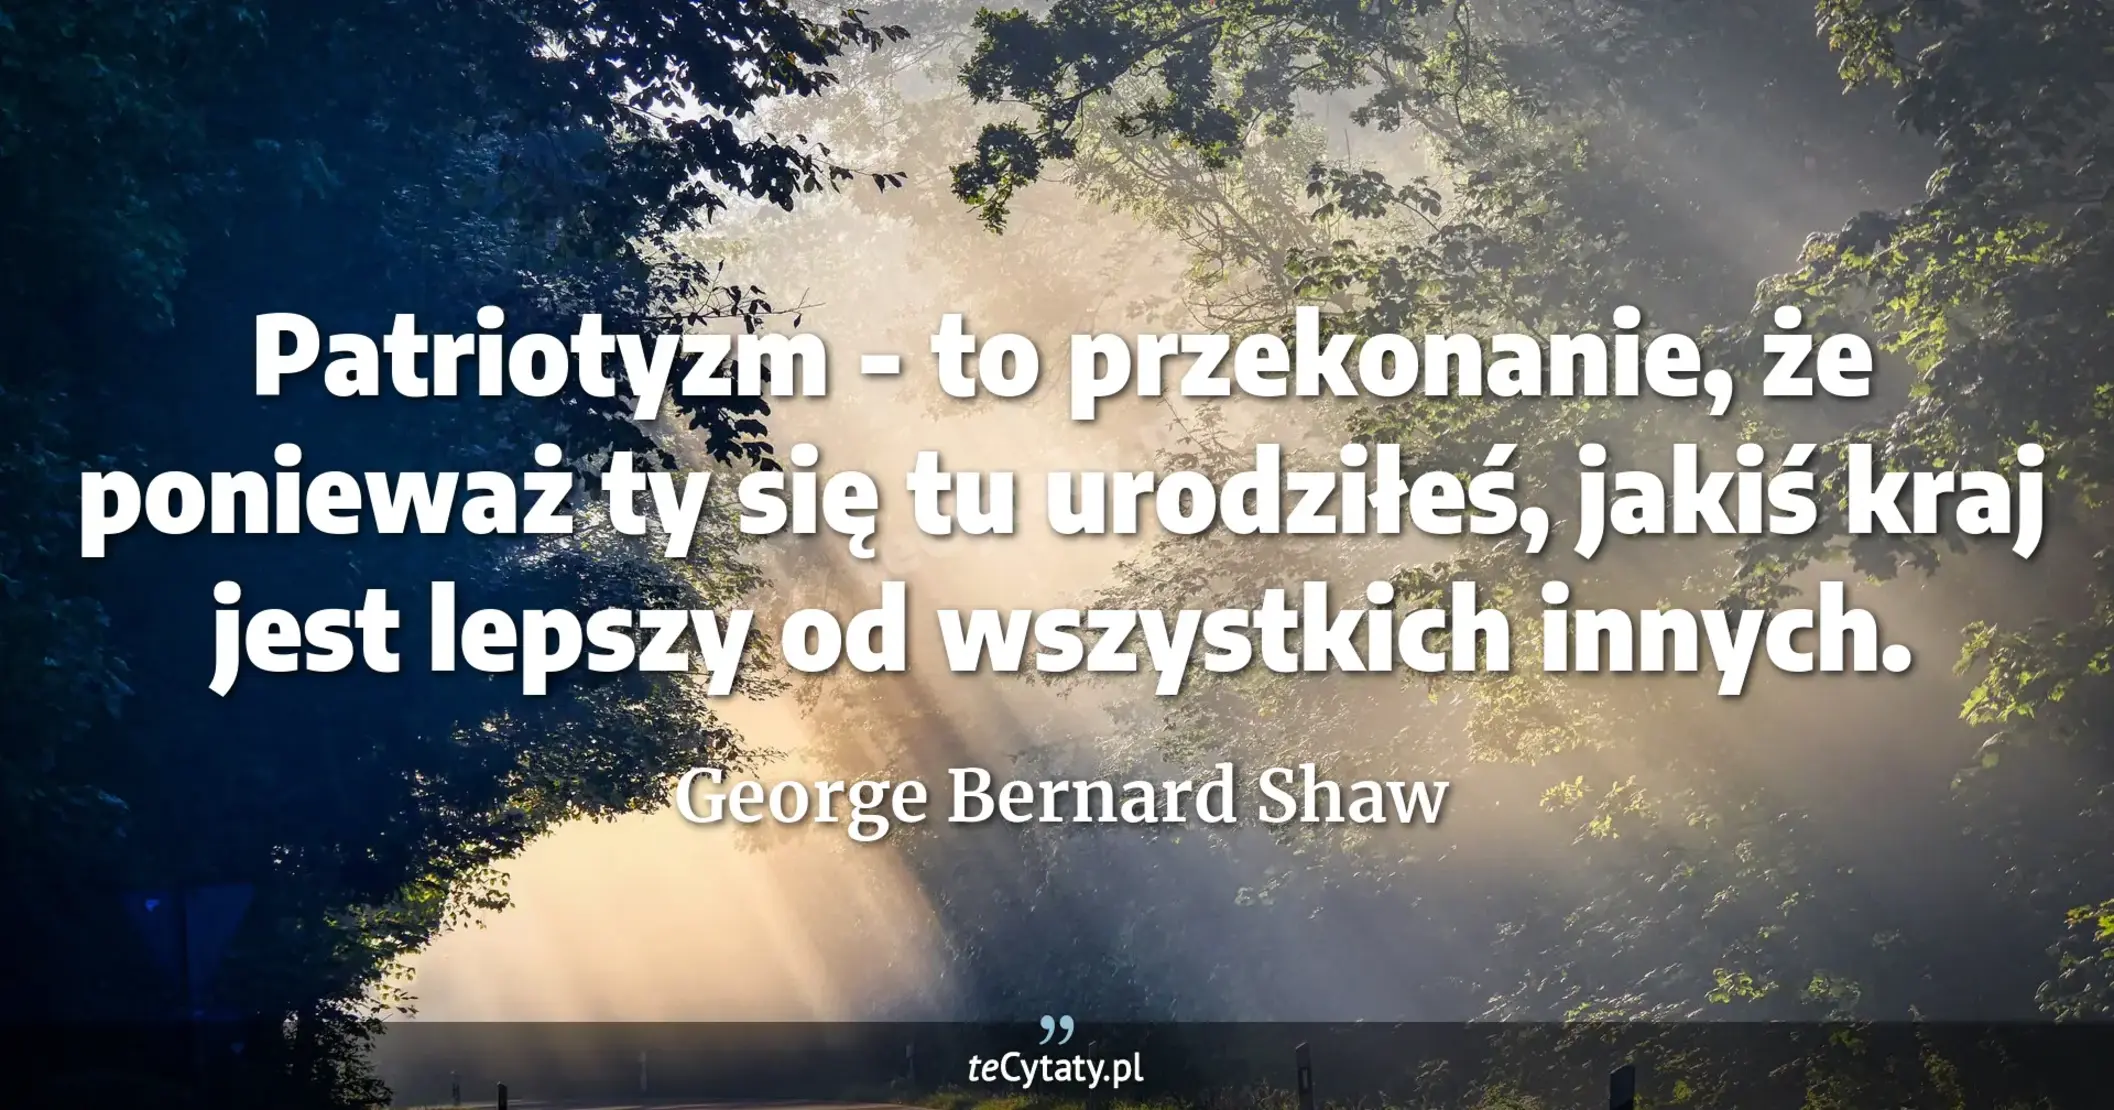 Patriotyzm - to przekonanie, że ponieważ ty się tu urodziłeś, jakiś kraj jest lepszy od wszystkich innych. - George Bernard Shaw